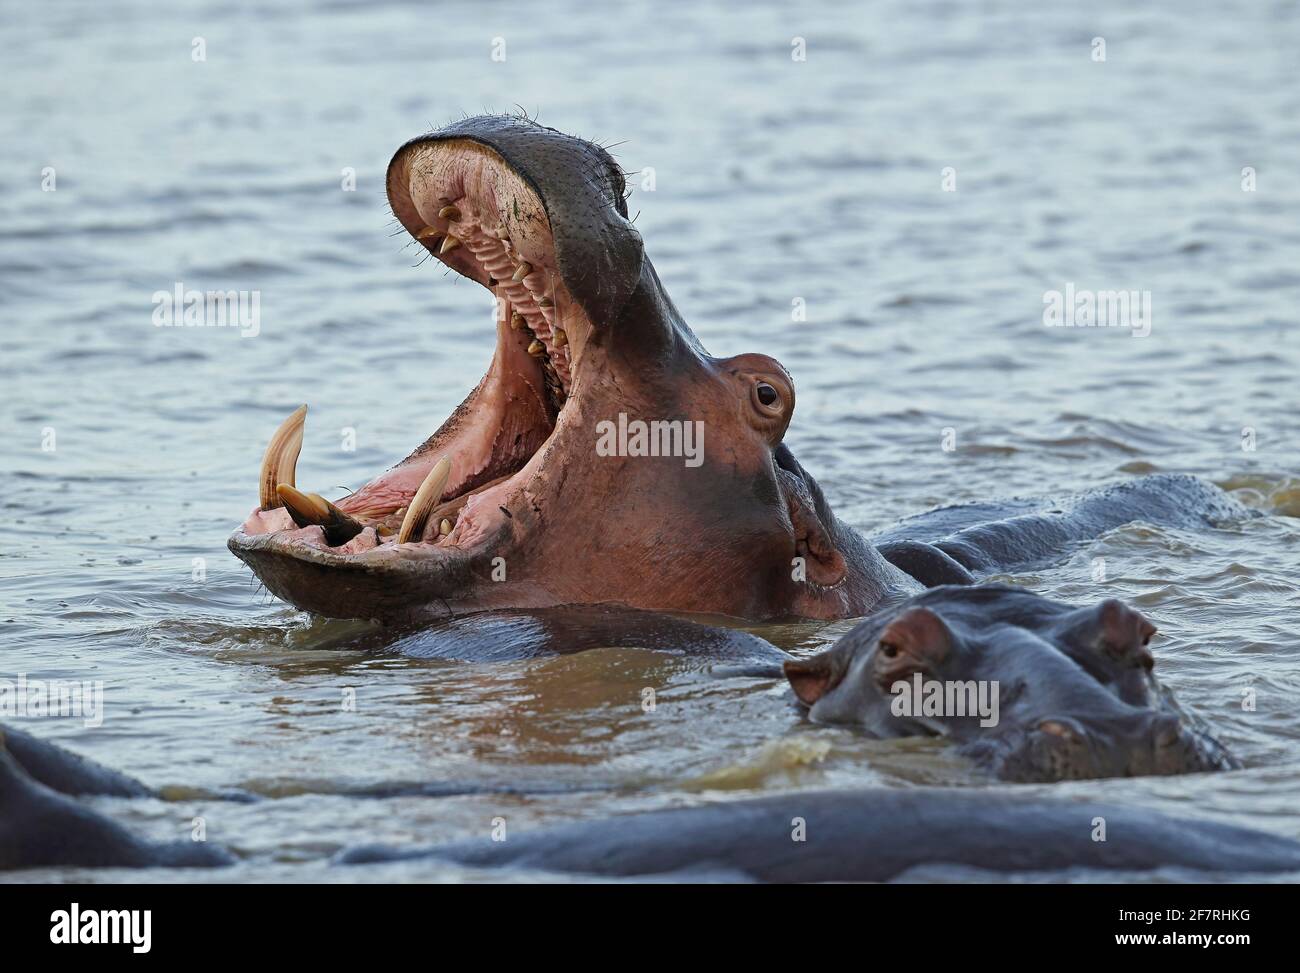 Hippopotamus commun (Hippopotamus amphibius capensis) adulte bâillant Sainte-Lucie, Afrique du Sud Novembre Banque D'Images